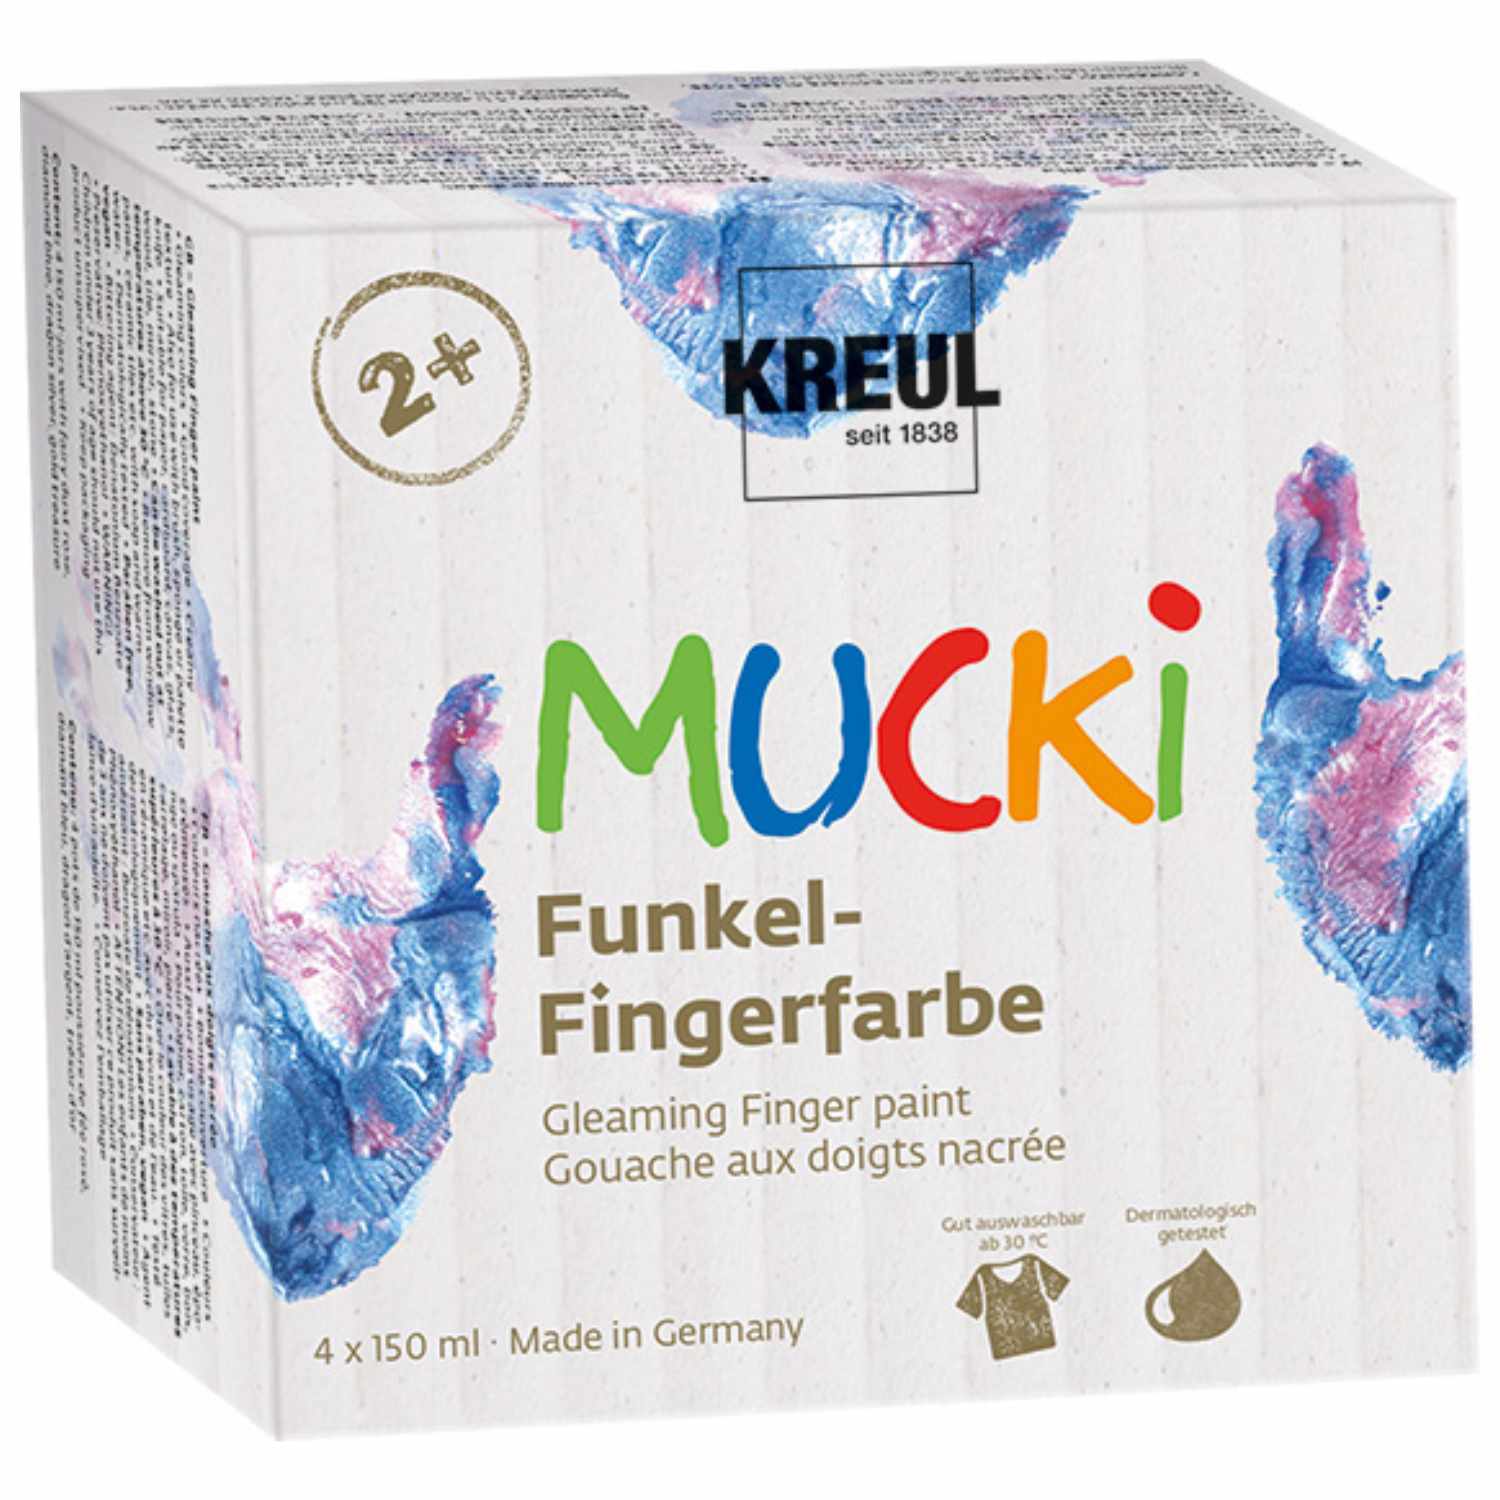 MUCKI Funkel-Fingerfarbe 4 Farben